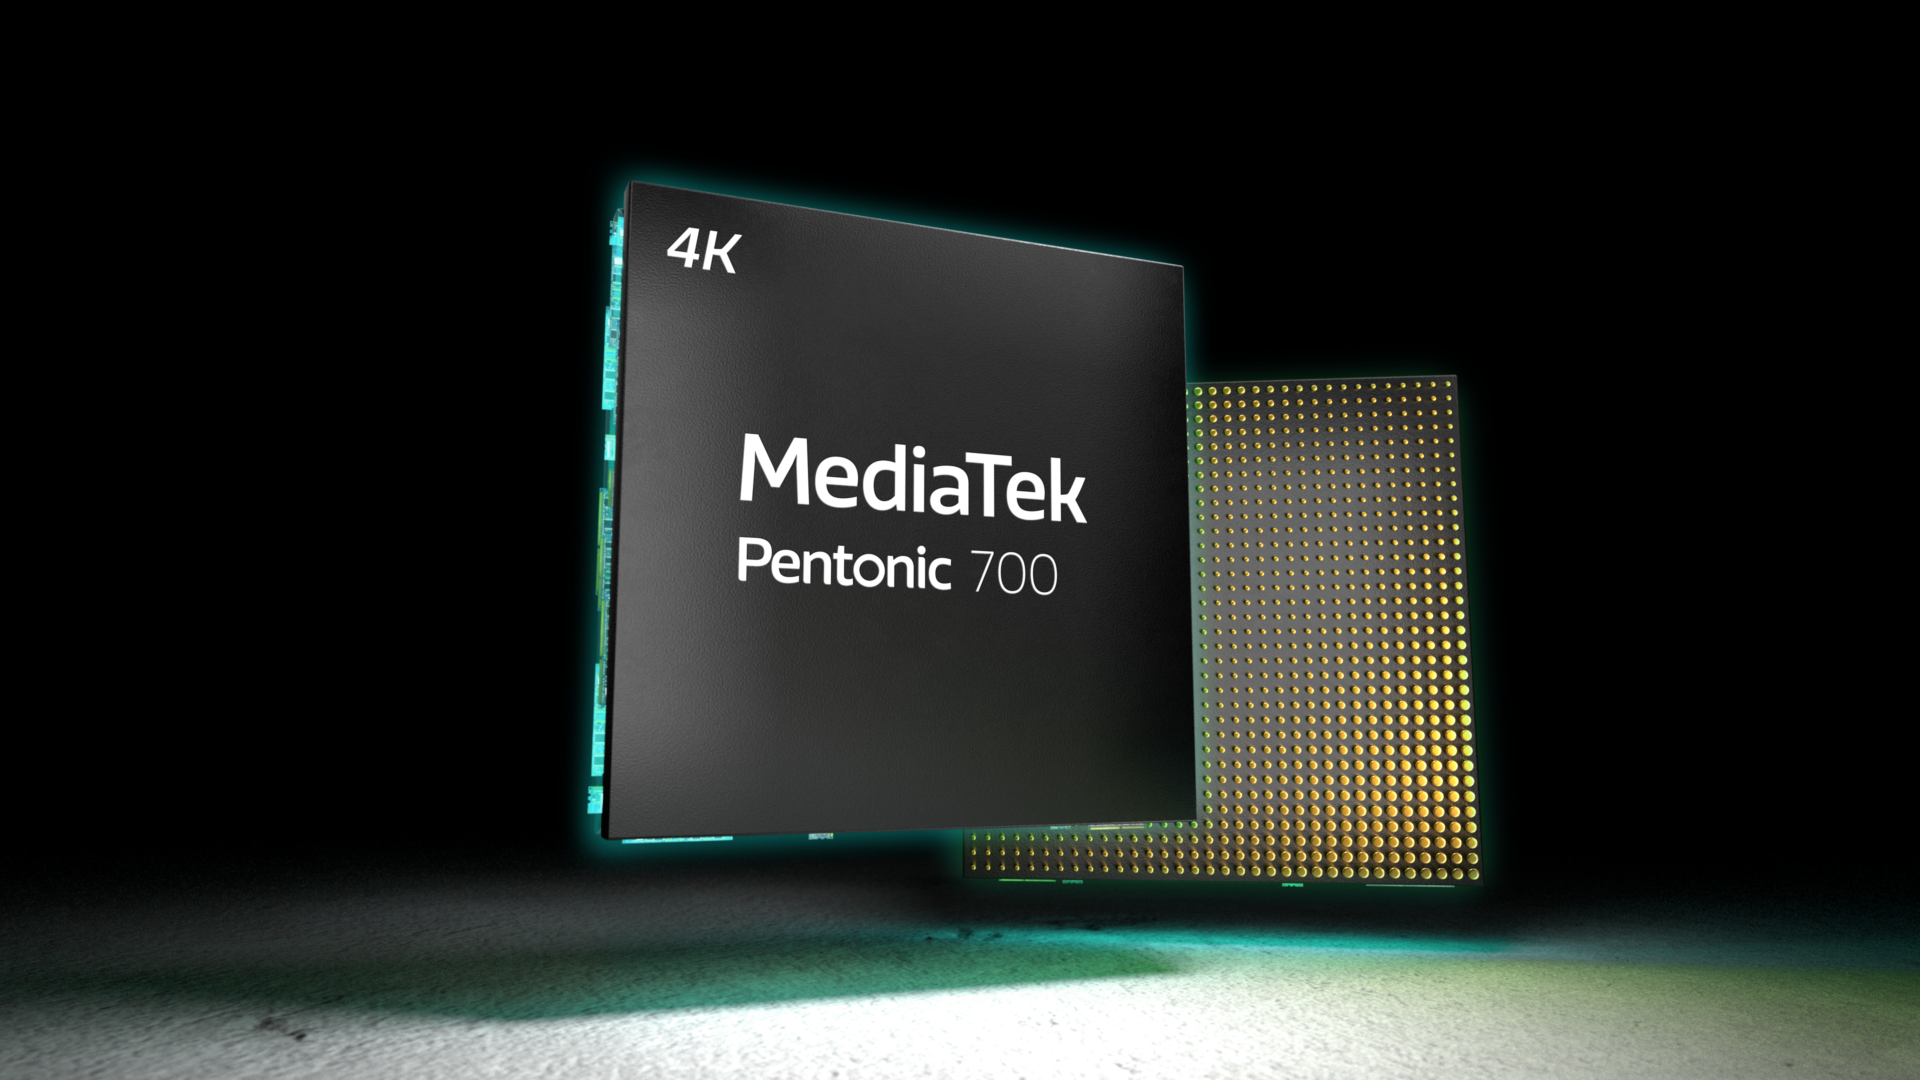 Pentonic 700, el nuevo chip de MediaTek para Smart TVs 4K con AI y Dolby Vision IQ